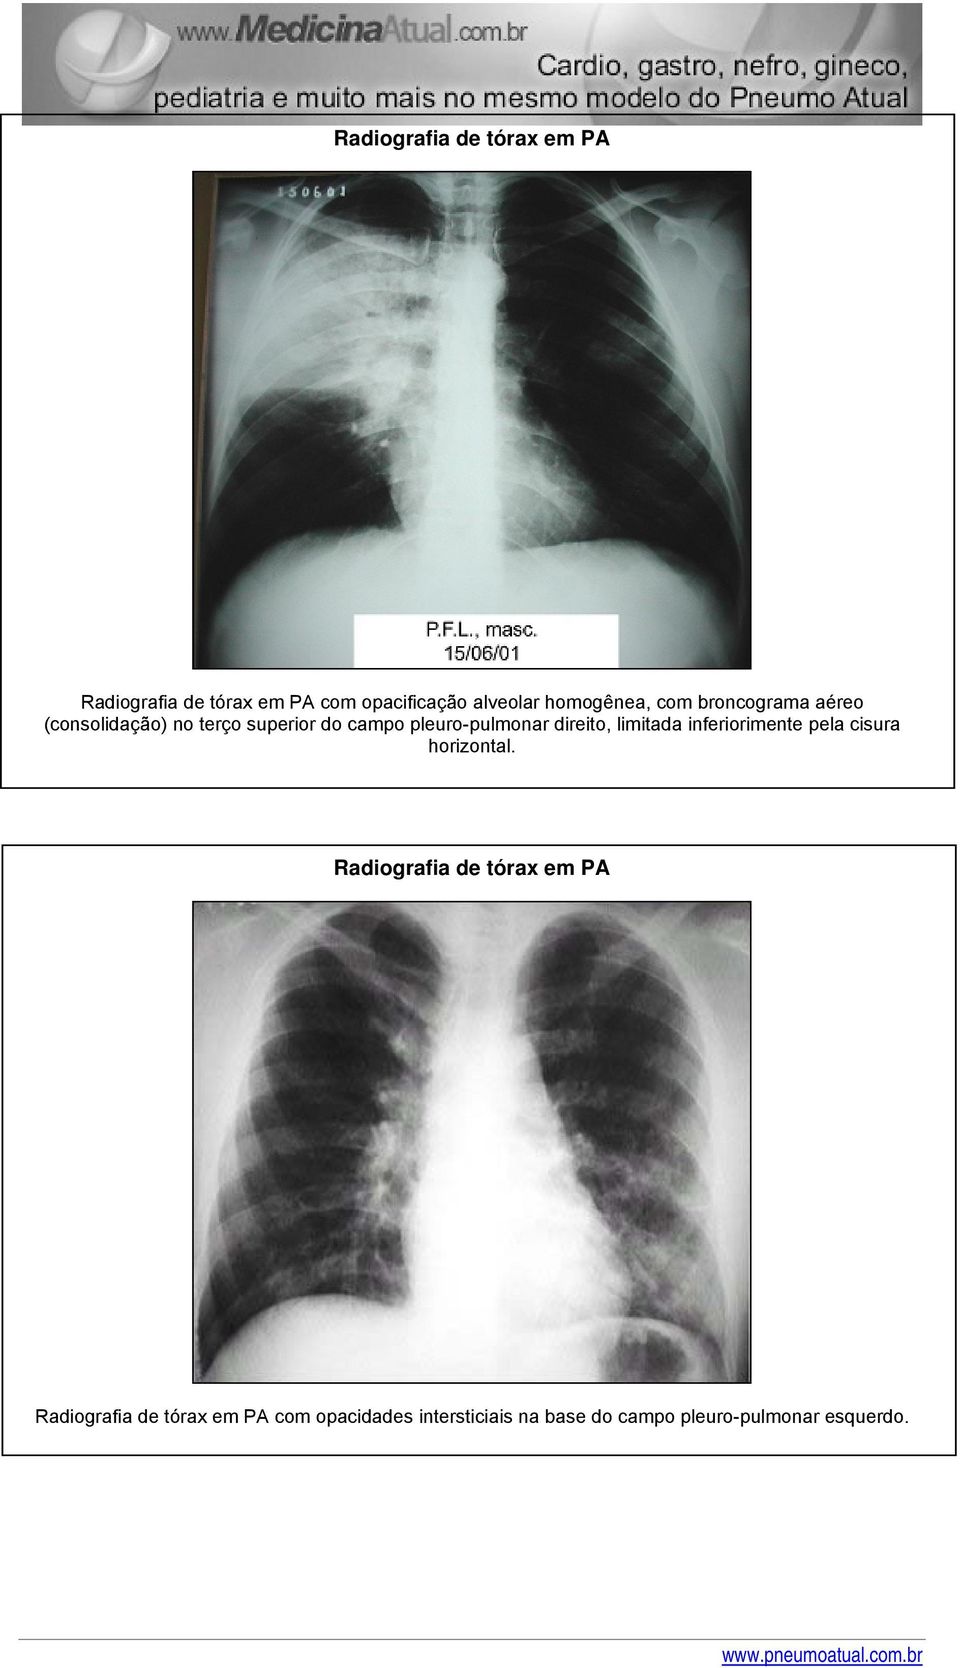 pleuro-pulmonar direito, limitada inferiorimente pela cisura horizontal.